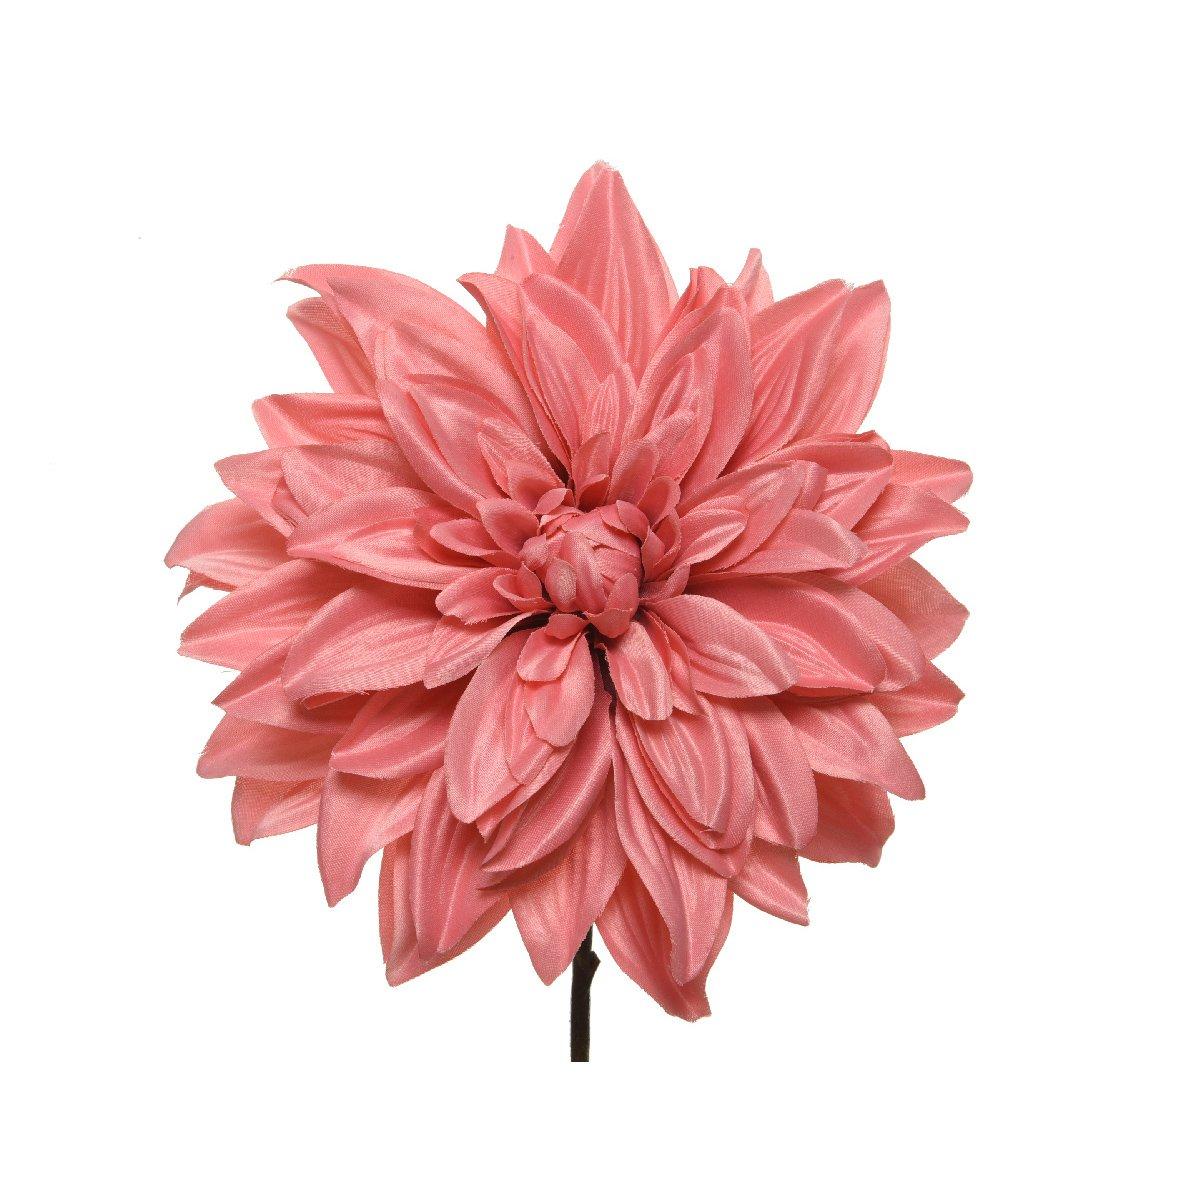 Selected image for Ukrasni cvet 220246 ružičasti